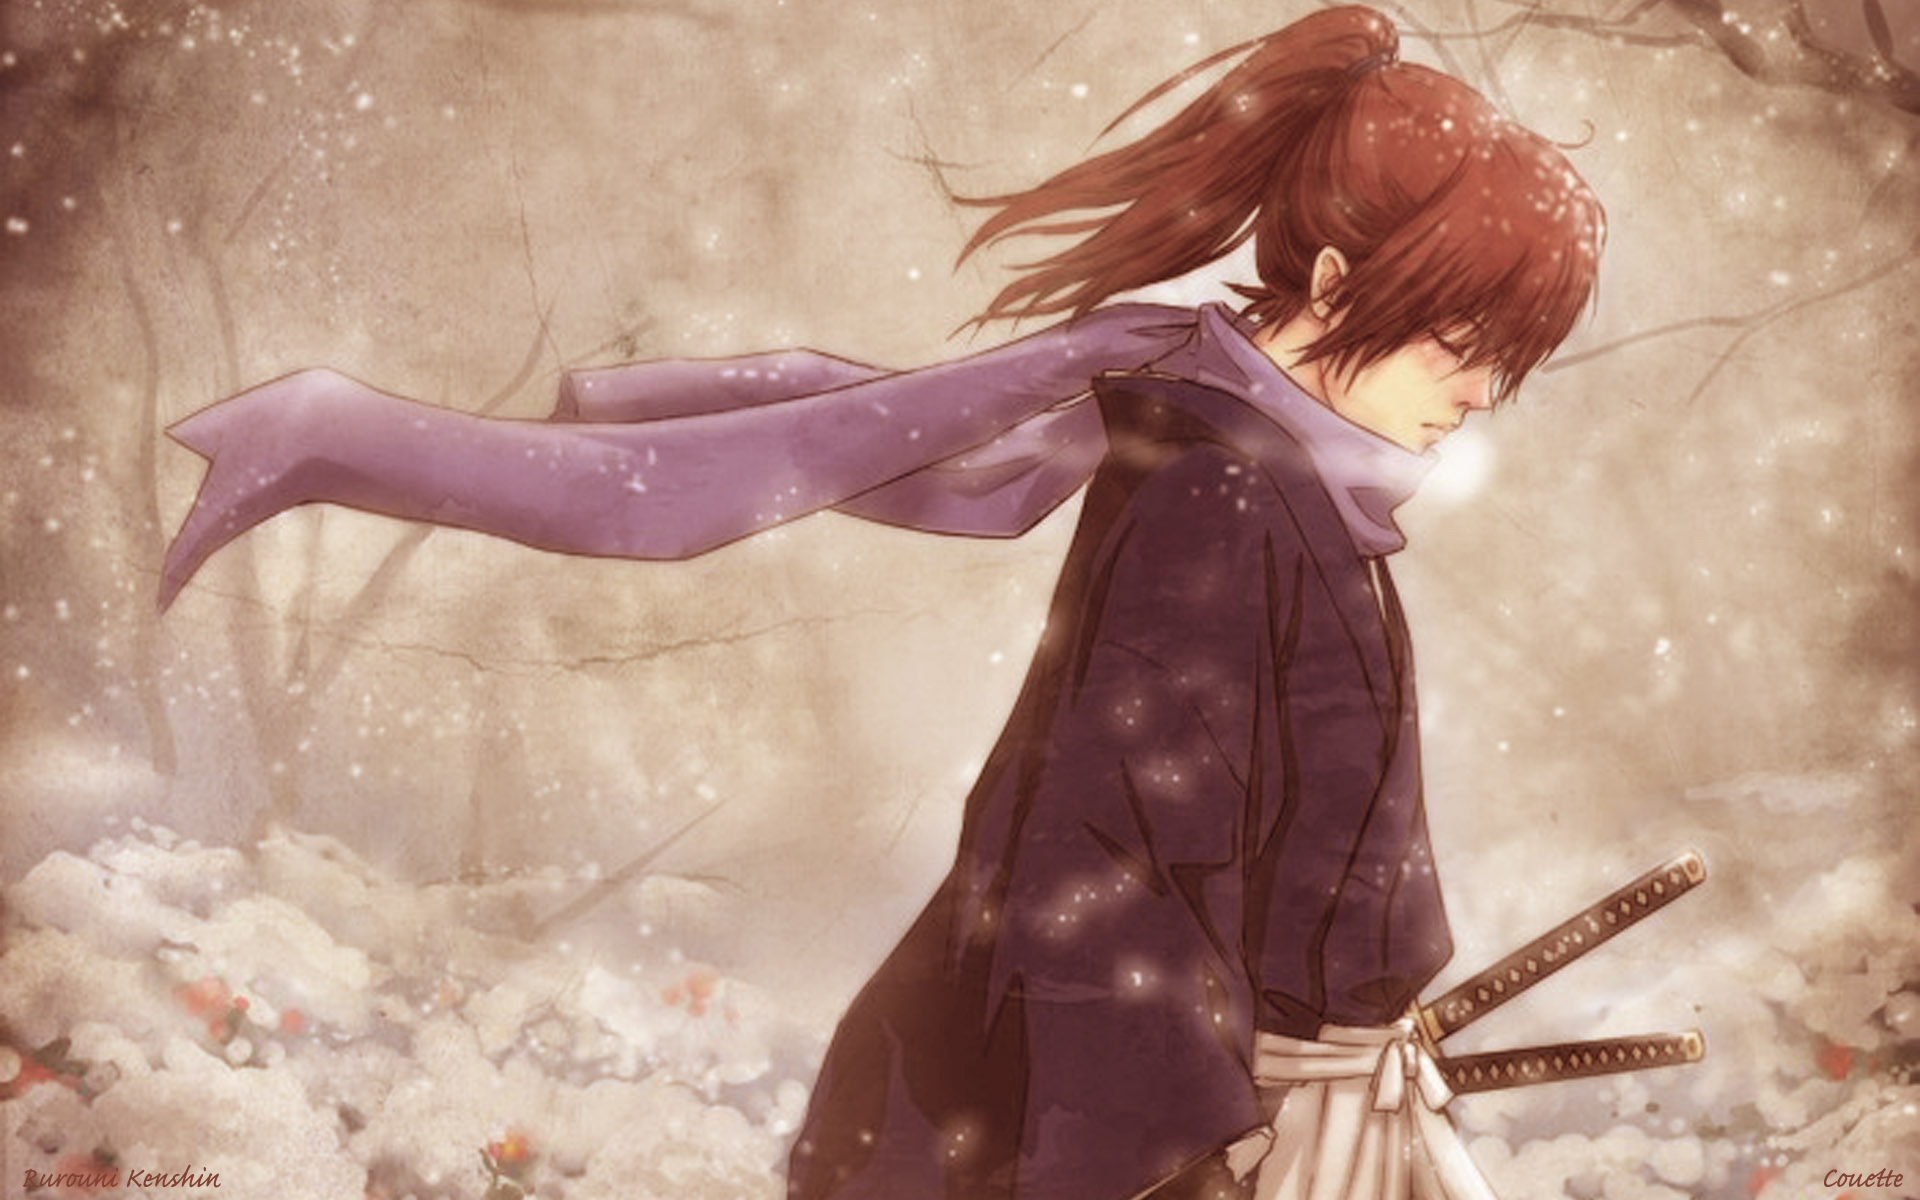 Rurouni Kenshin Wallpaper HD